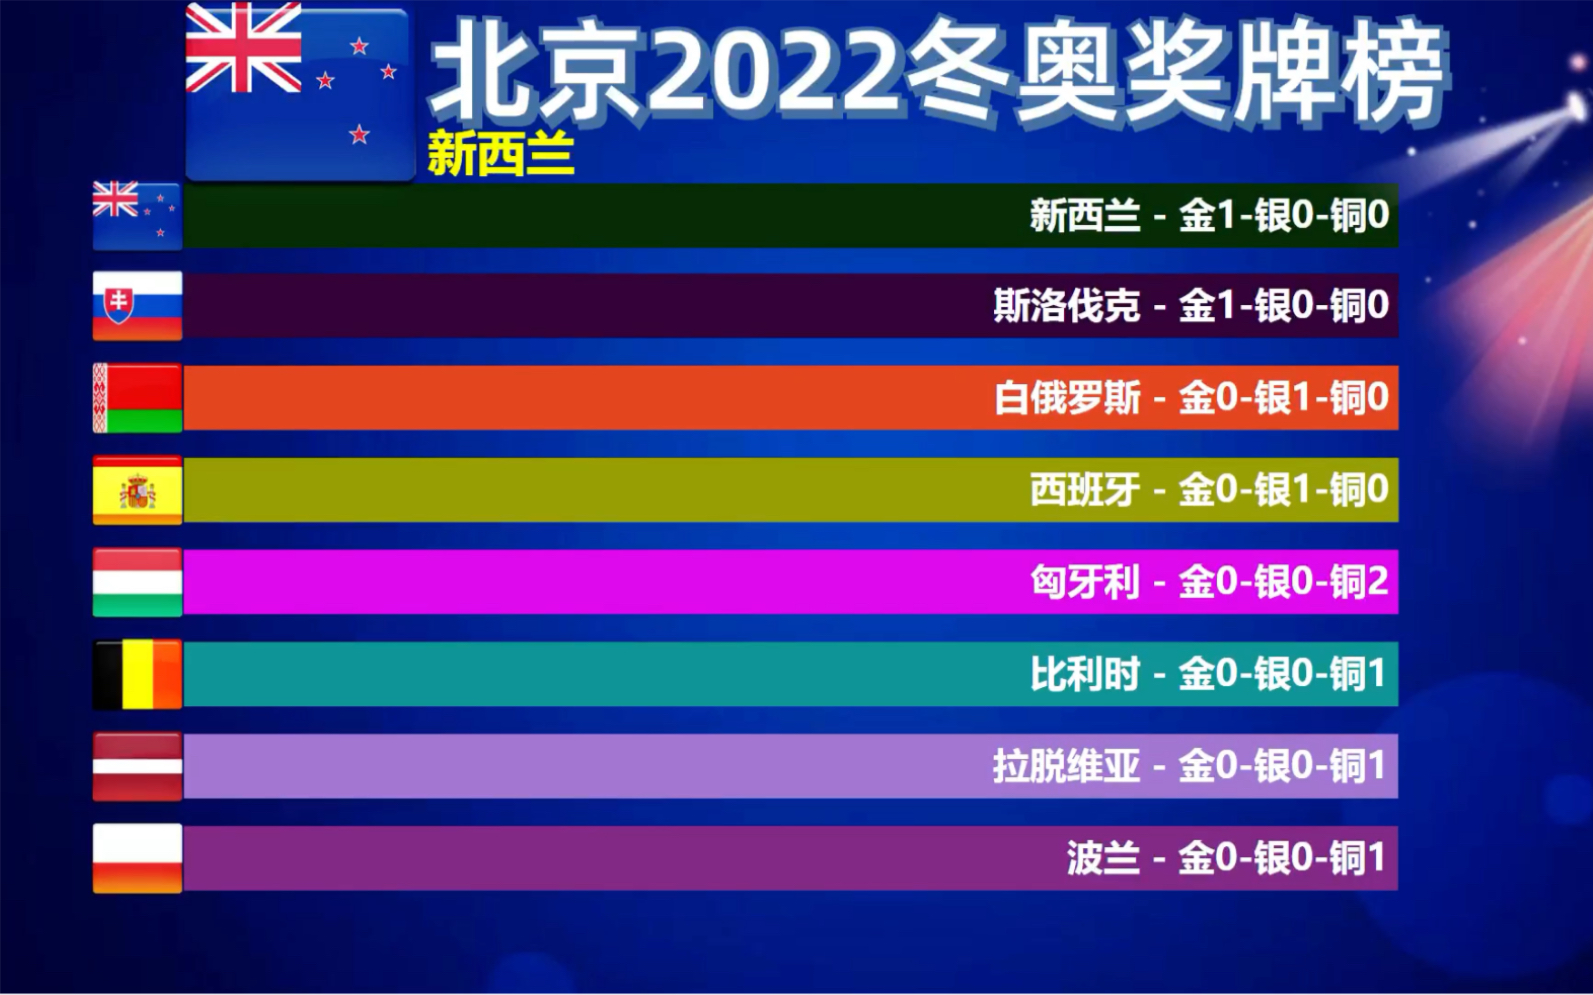 2022年冬奥会金牌榜图片